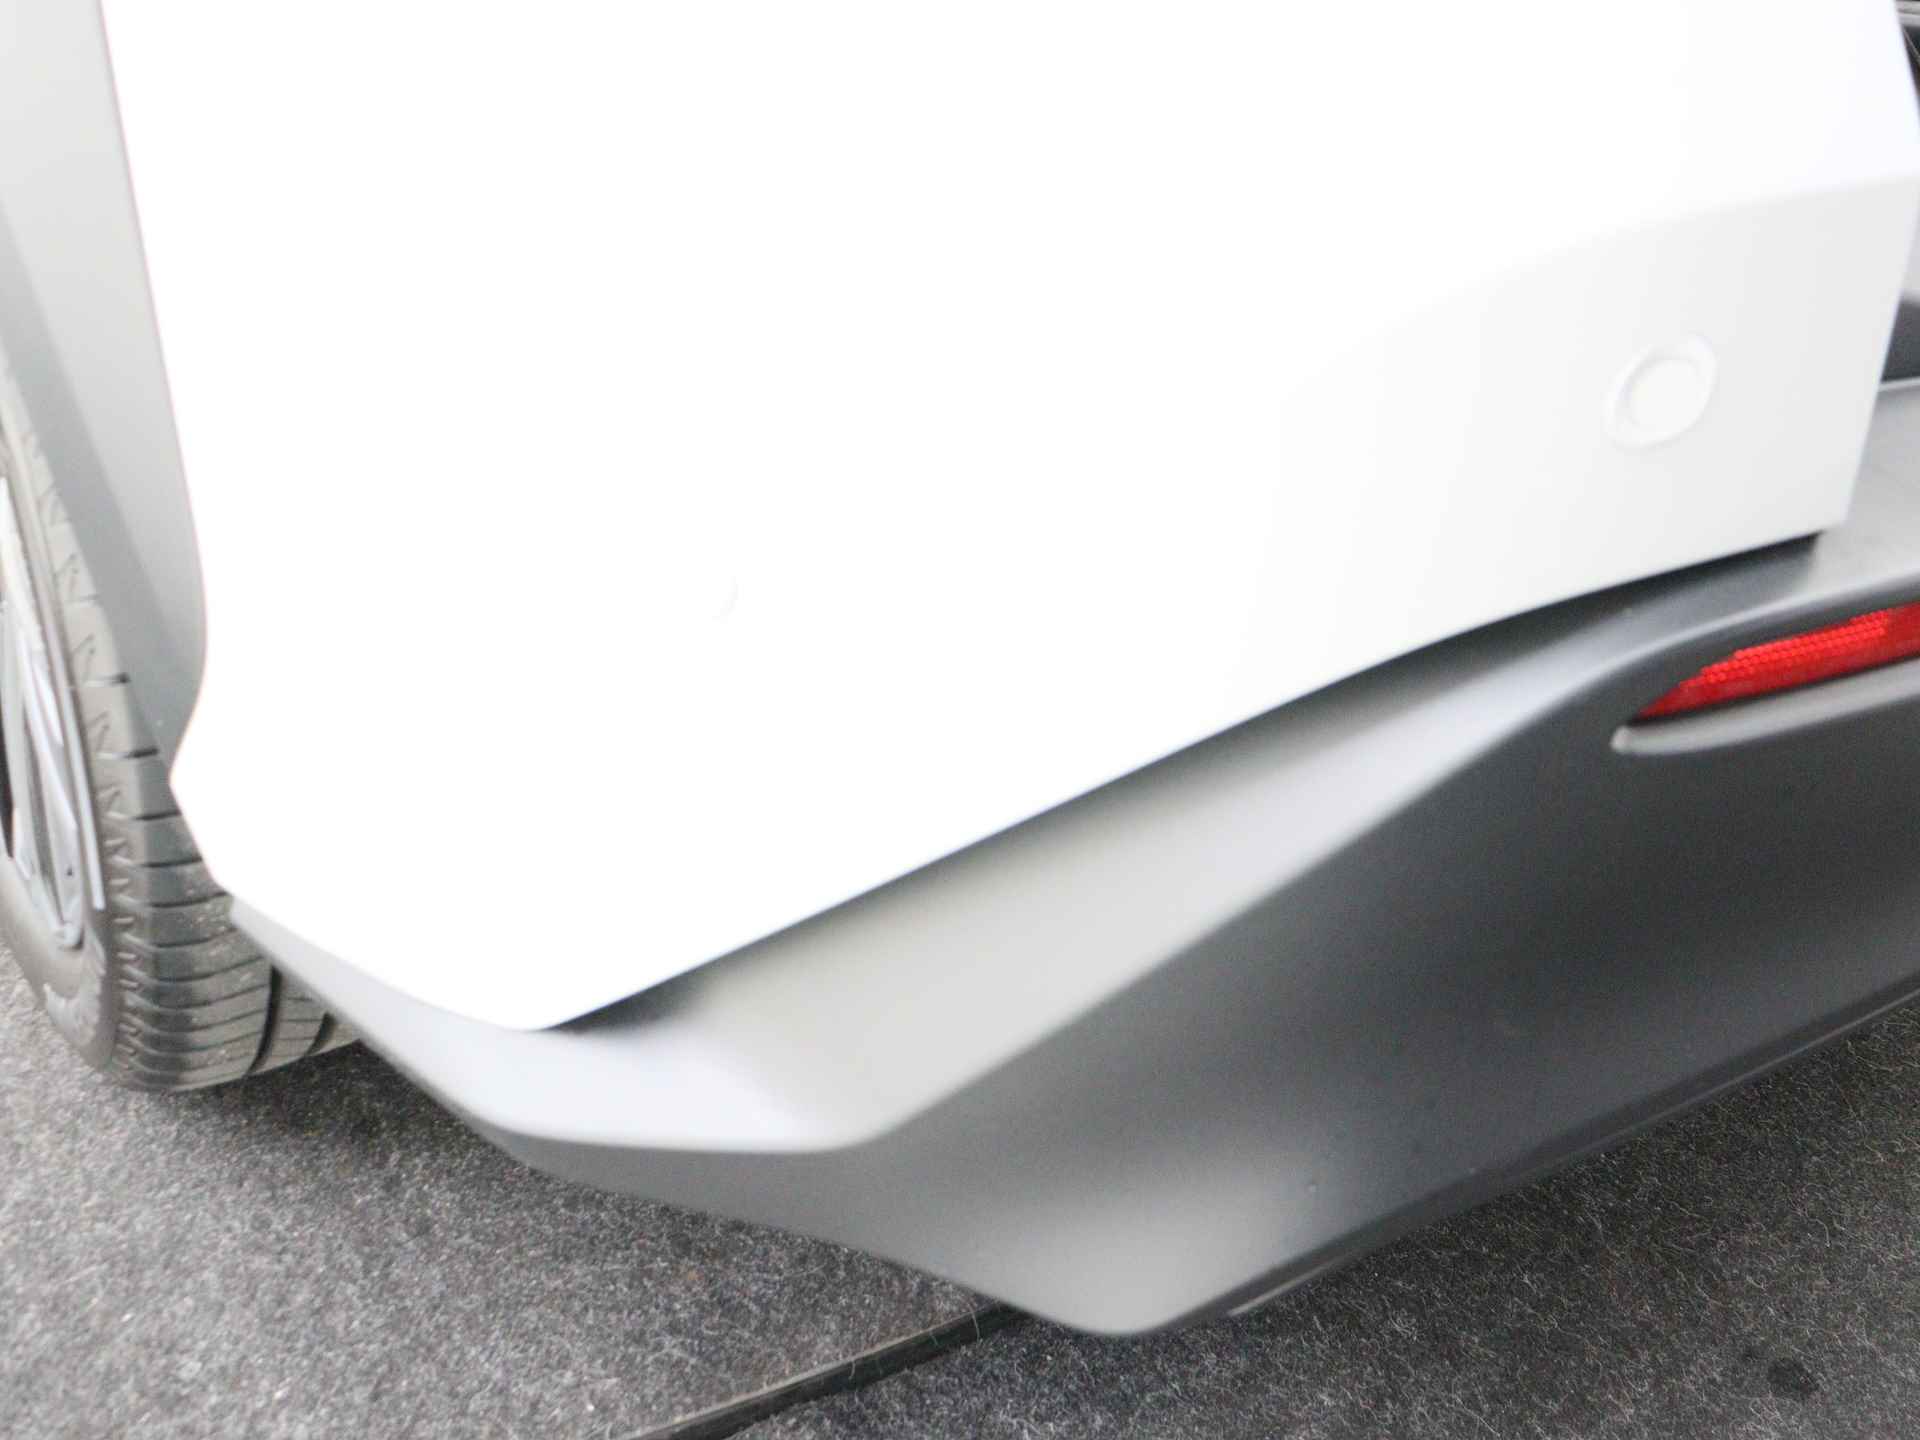 Toyota Bz4x Launch Edition Premium Bi-Tone uitvoering | Navigatie | Stoel&stuur verwarming | My T app | Panoramadak | Wegenbelasting vrij | Subsidie €2000,- aanvraag mogelijk. - 40/48